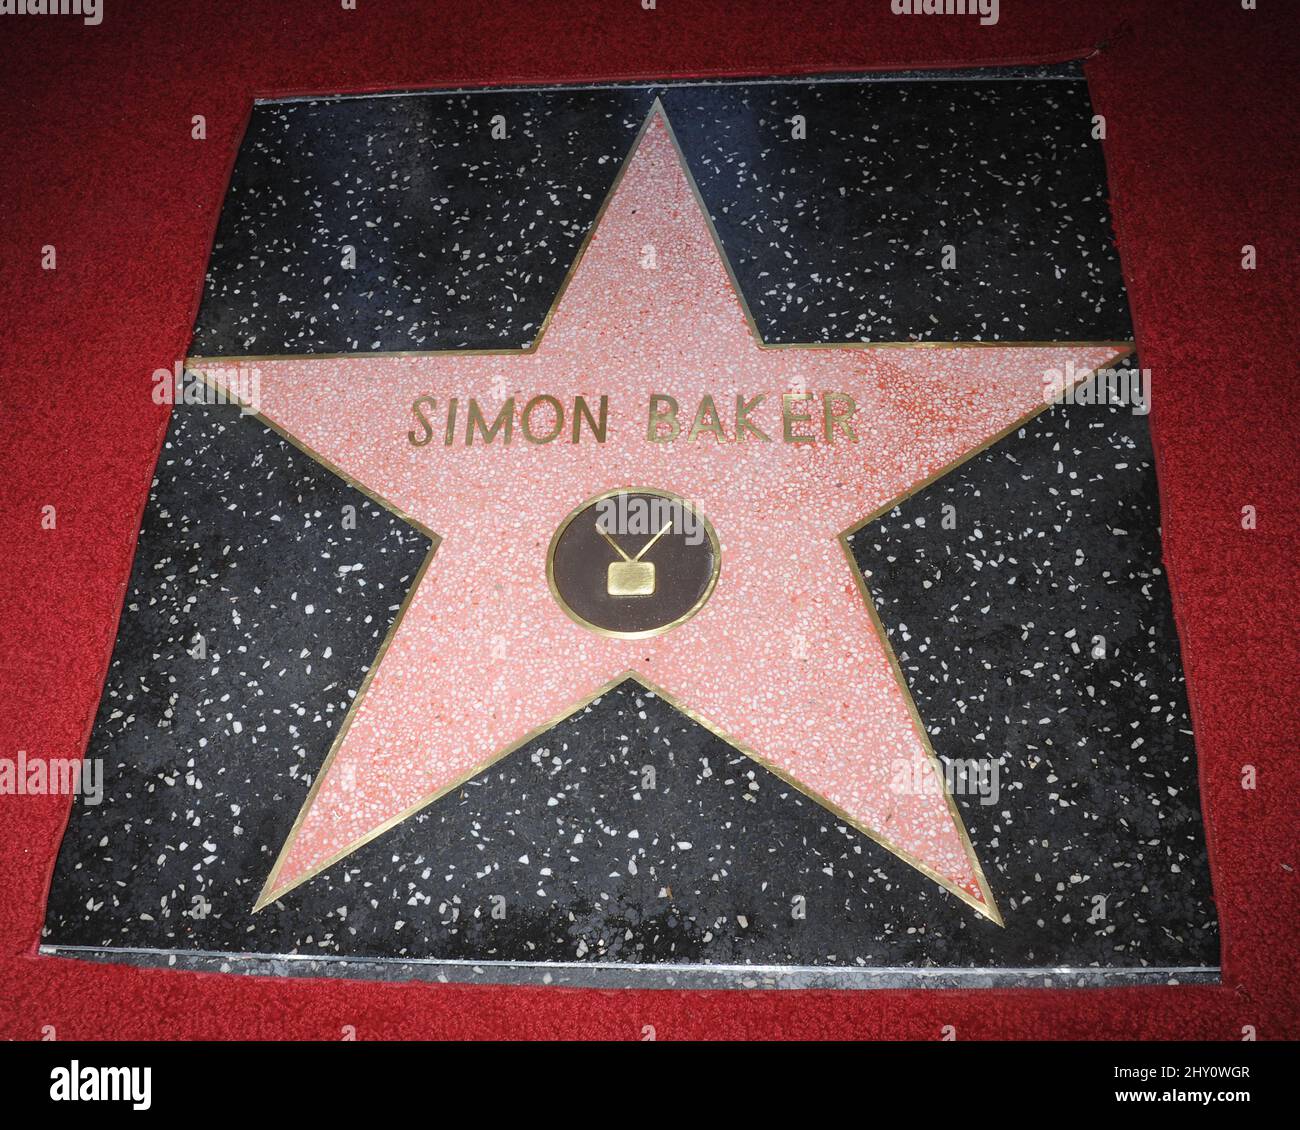 Simon Baker Simon Baker recibió el honor de contar con una estrella en el Paseo de la Fama de Hollywood Foto de stock